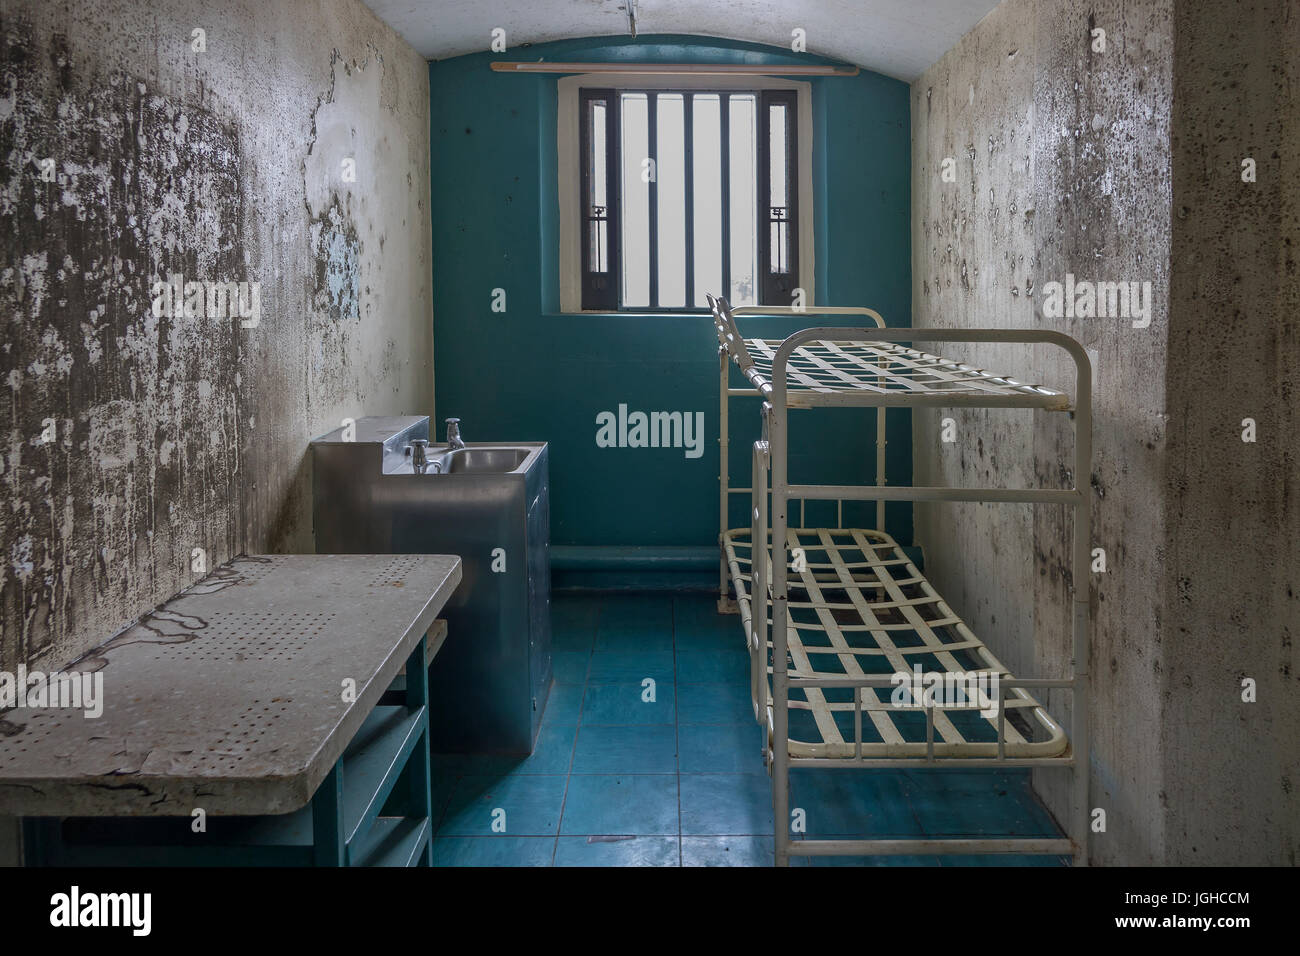 Inghilterra, Dorset, Dorchester prigione, cell Foto Stock